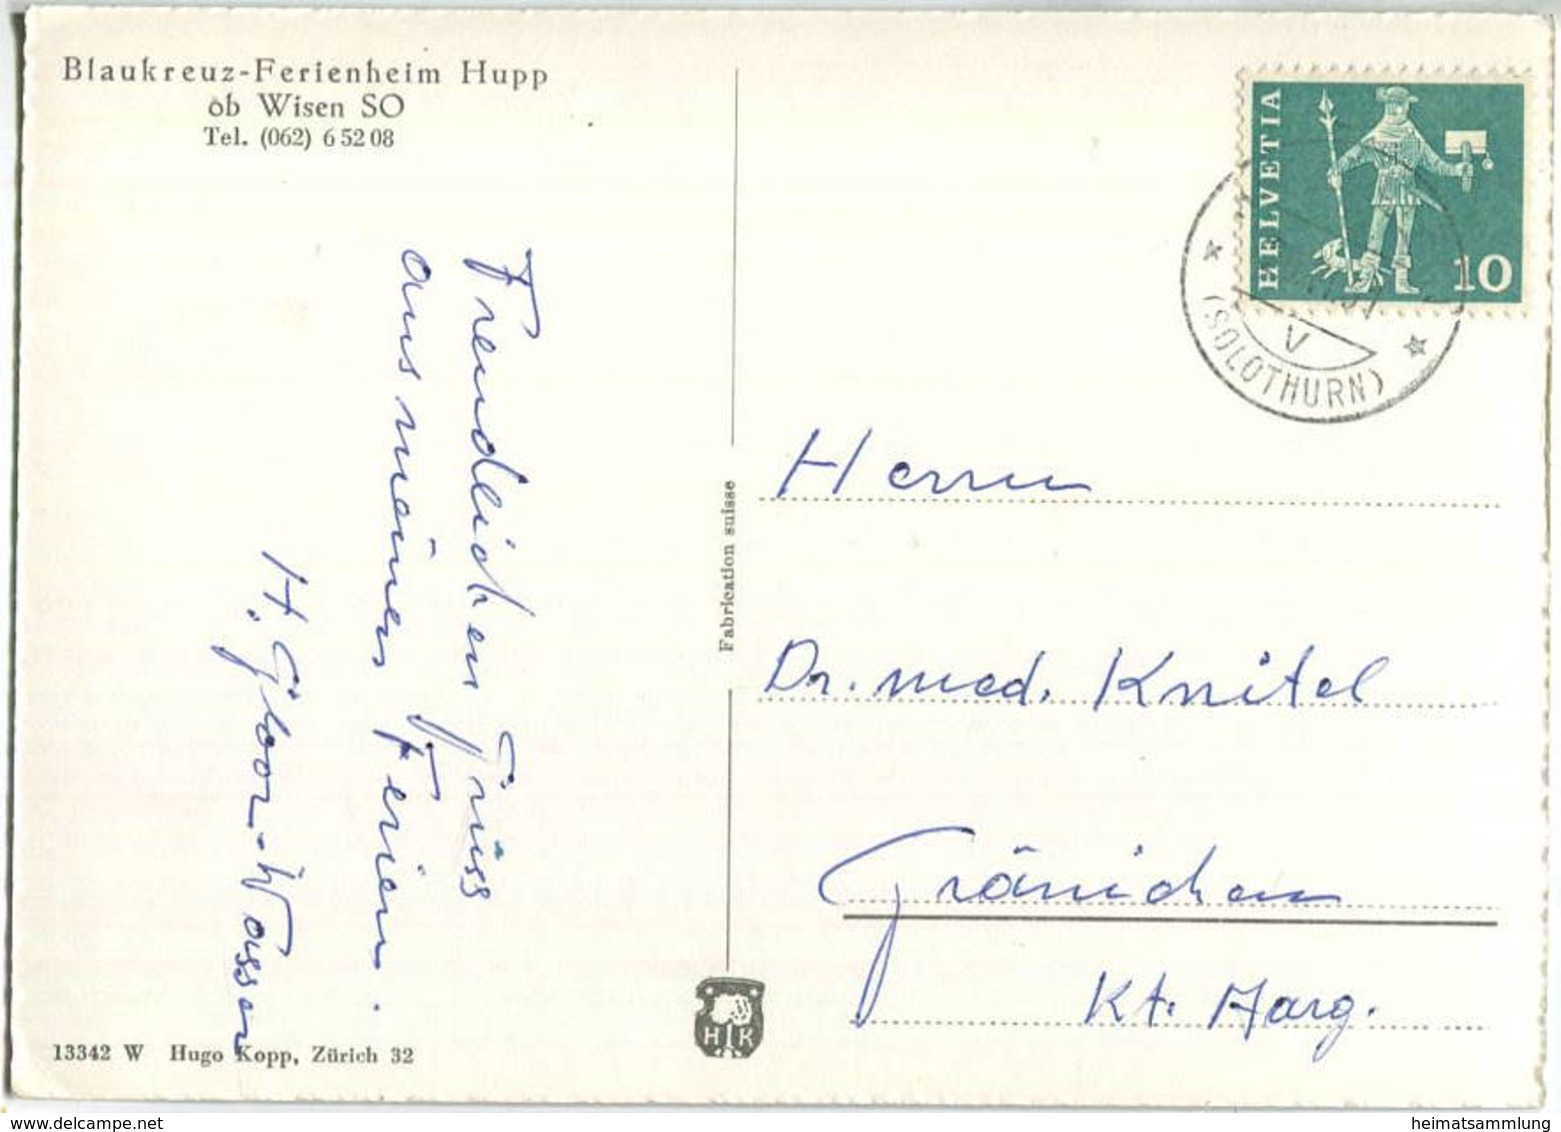 Wisen - Blaukreuz Ferienheim Hupp - Foto-AK Grossformat - Verlag Hugo Kopp Zürich Gel. 1961 - Wisen